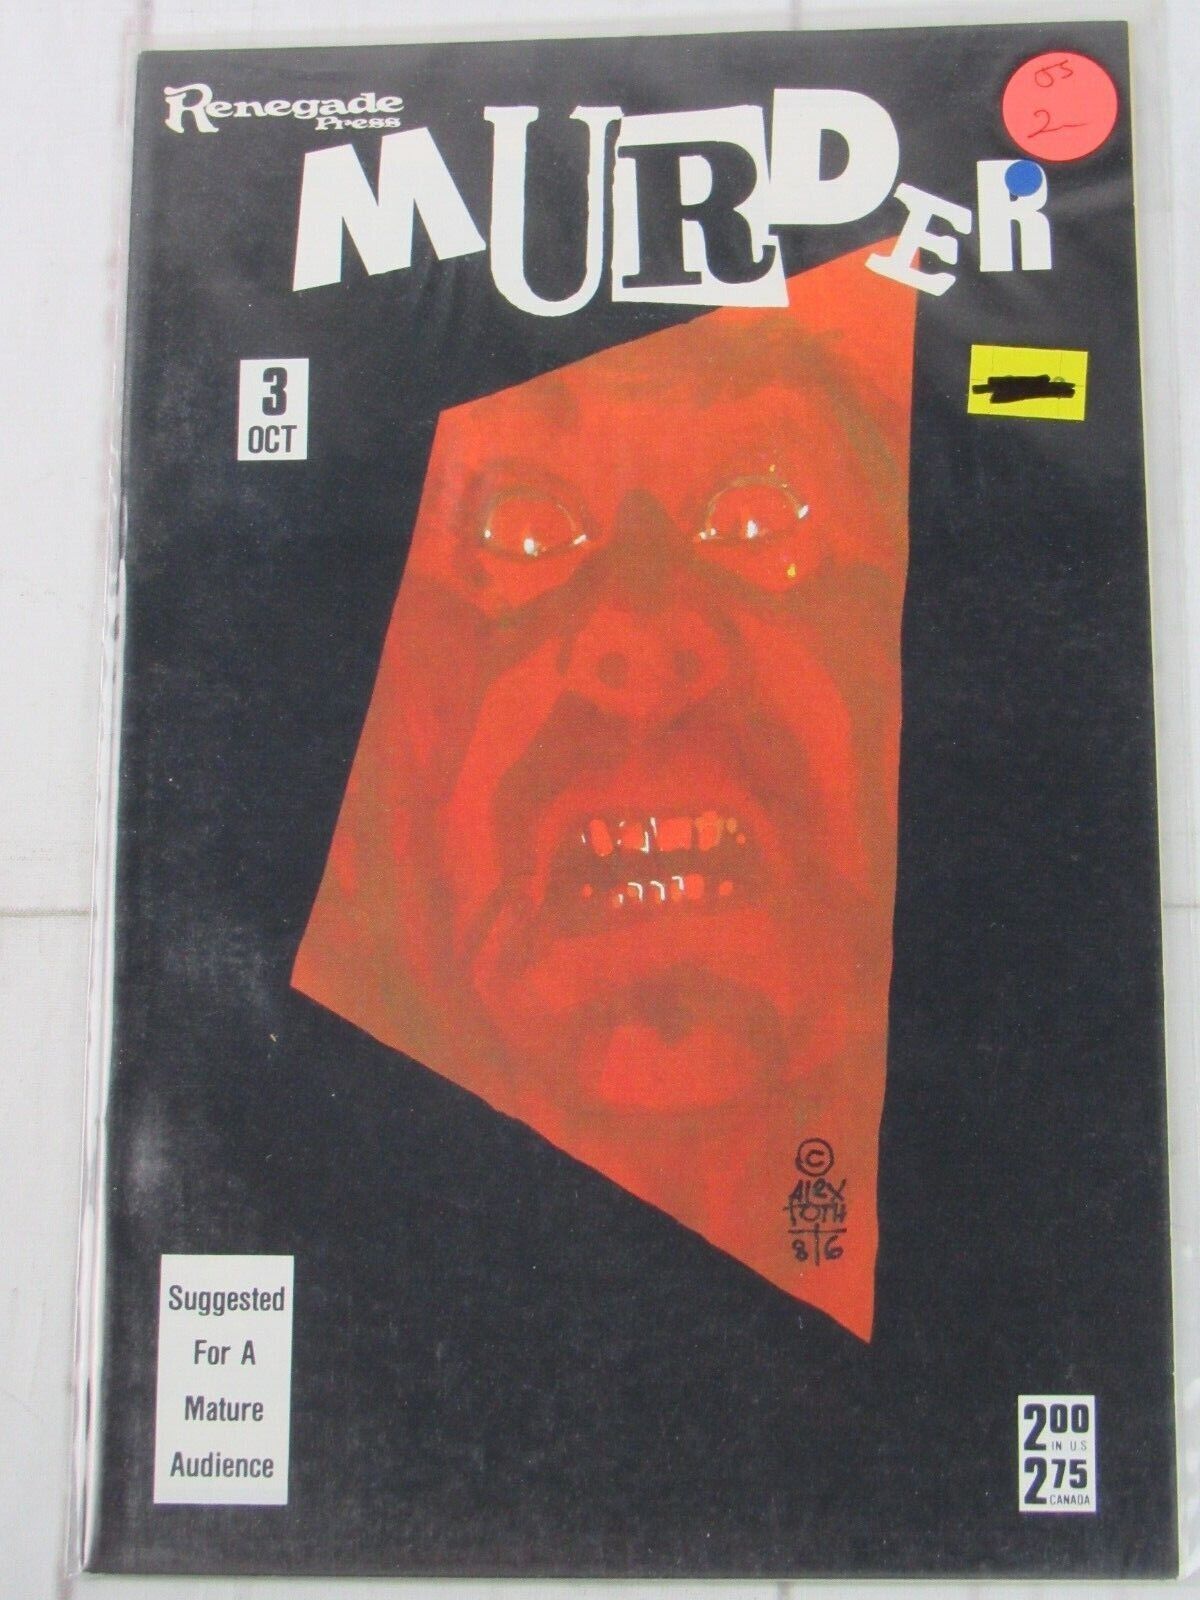 Murder #3 Oct. 1986 Renegade Press